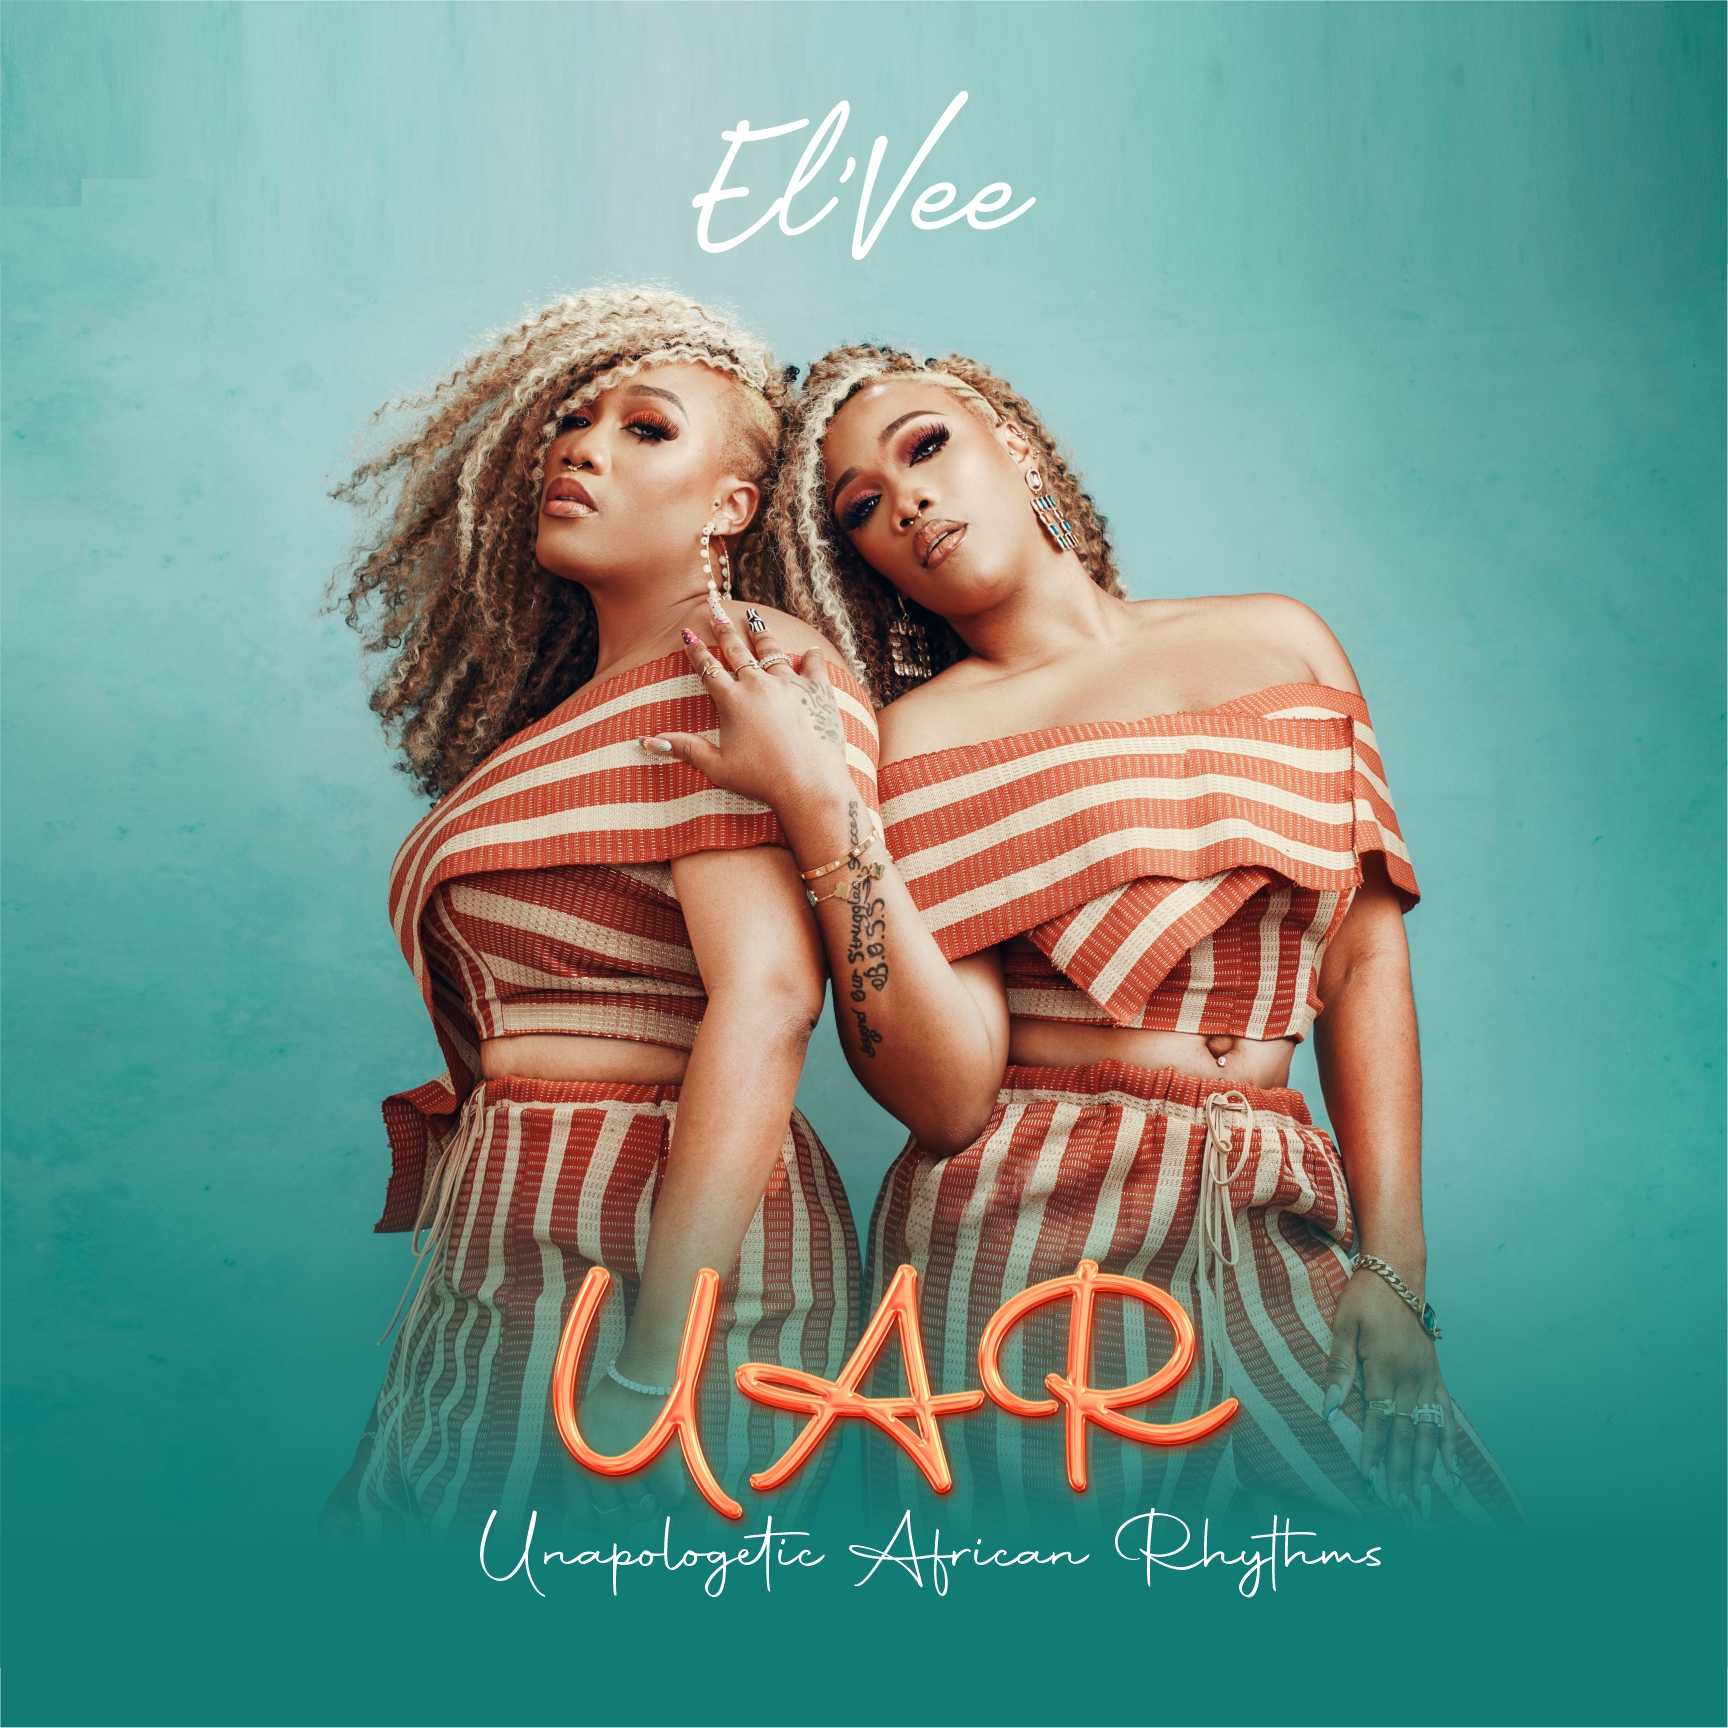 El’Vee Drop 'U.A.R (Unapologetic African Rhythms)' EP